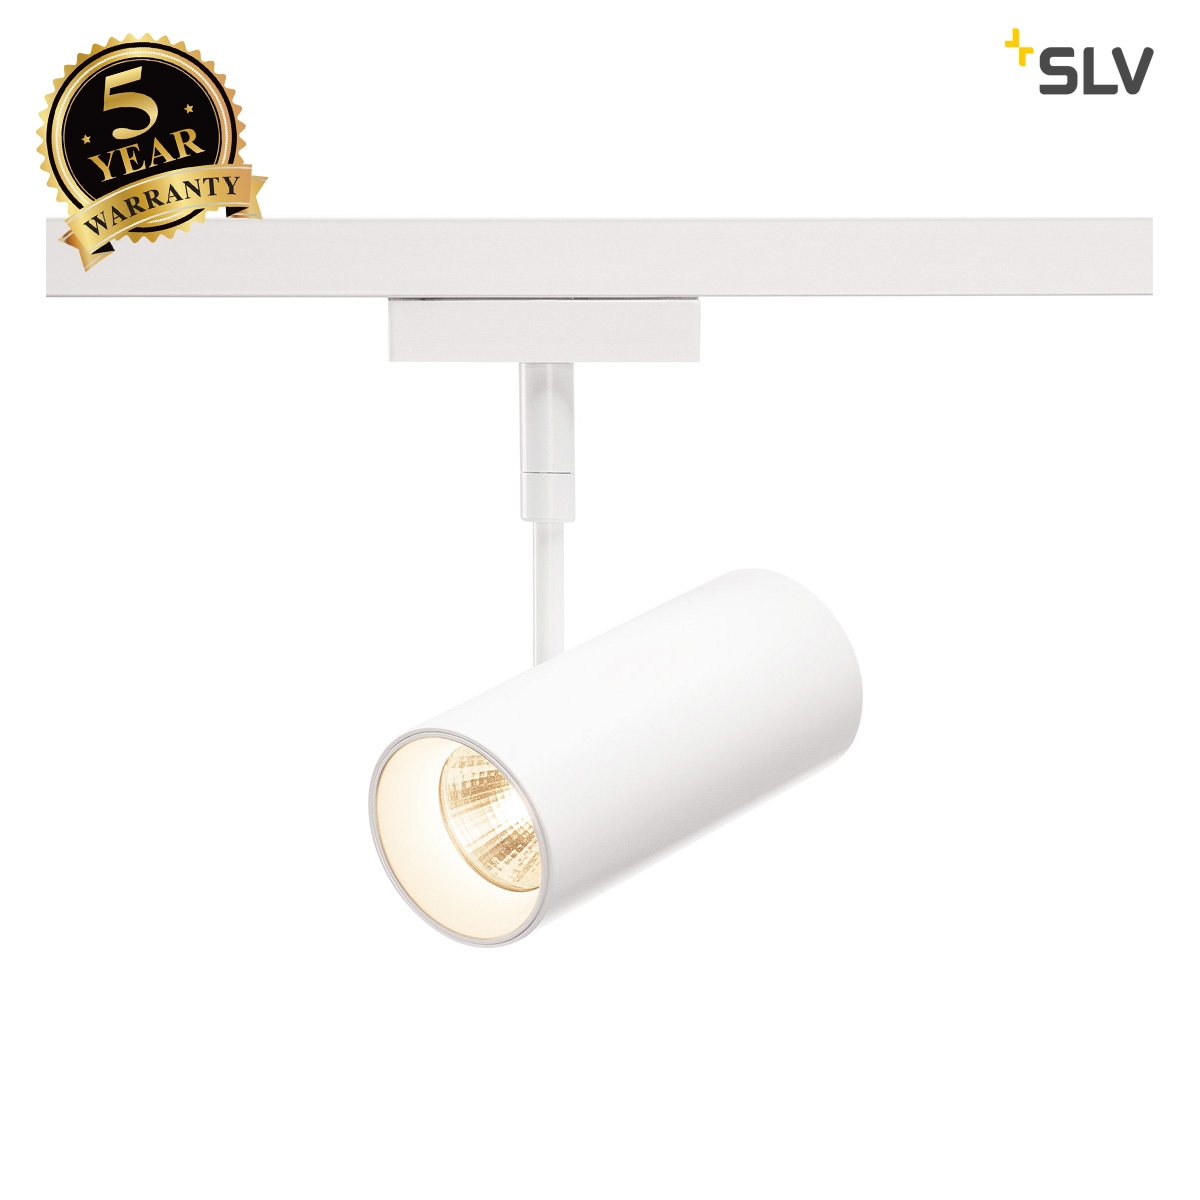 SLV REVILO, spotlight for SLV D-TRACK 2-circuit 240V track, LED, 3000K, white, 36, incl. 2-circuit adapter 1001355